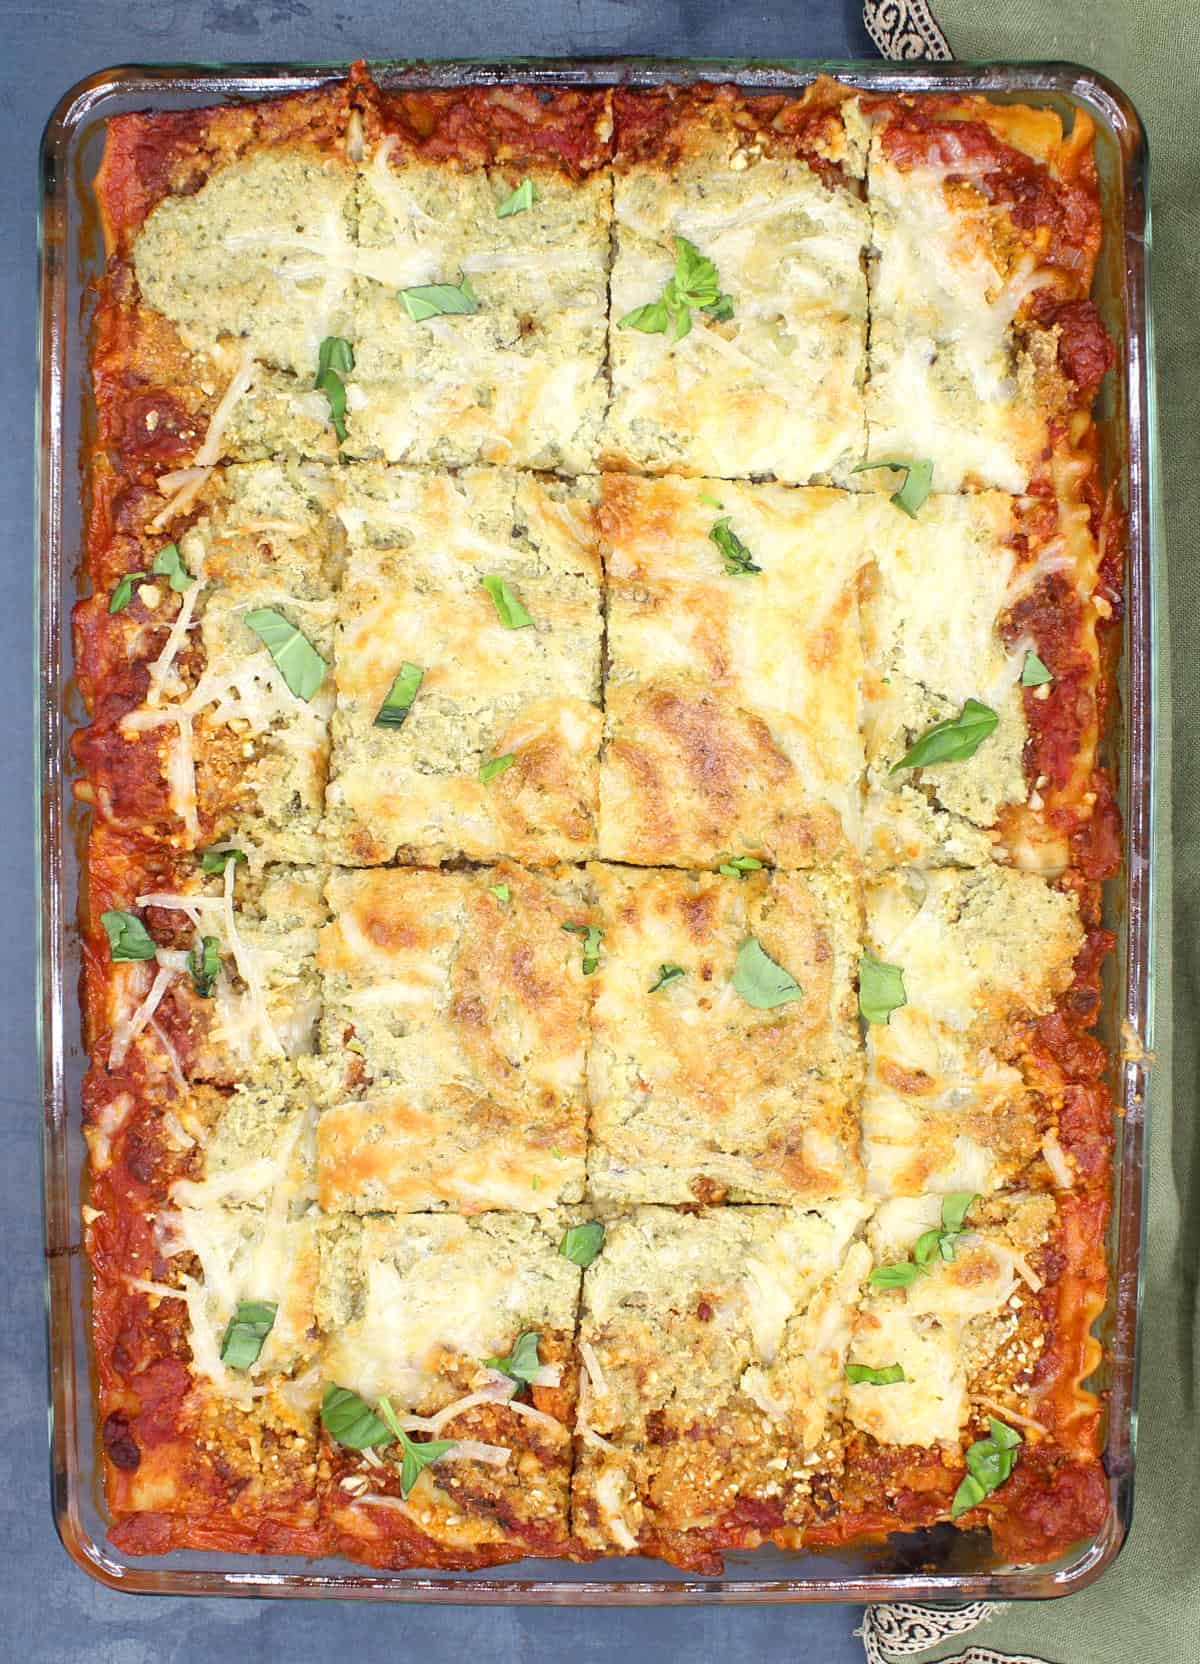 Vegan lasagna in baking dish.